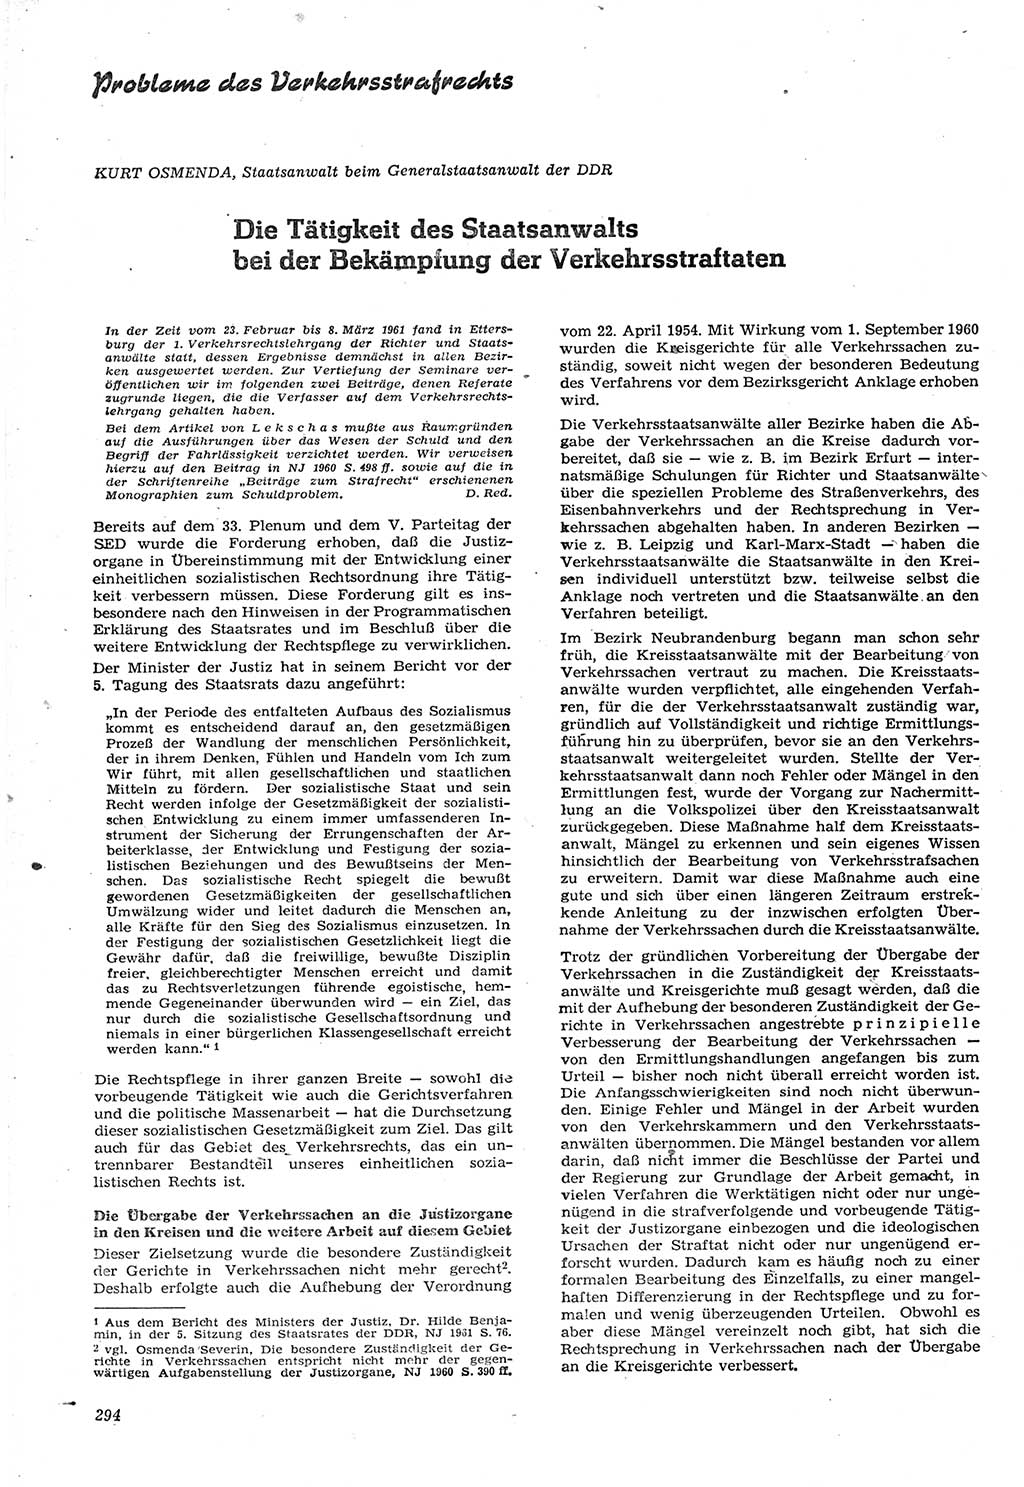 Neue Justiz (NJ), Zeitschrift für Recht und Rechtswissenschaft [Deutsche Demokratische Republik (DDR)], 15. Jahrgang 1961, Seite 294 (NJ DDR 1961, S. 294)